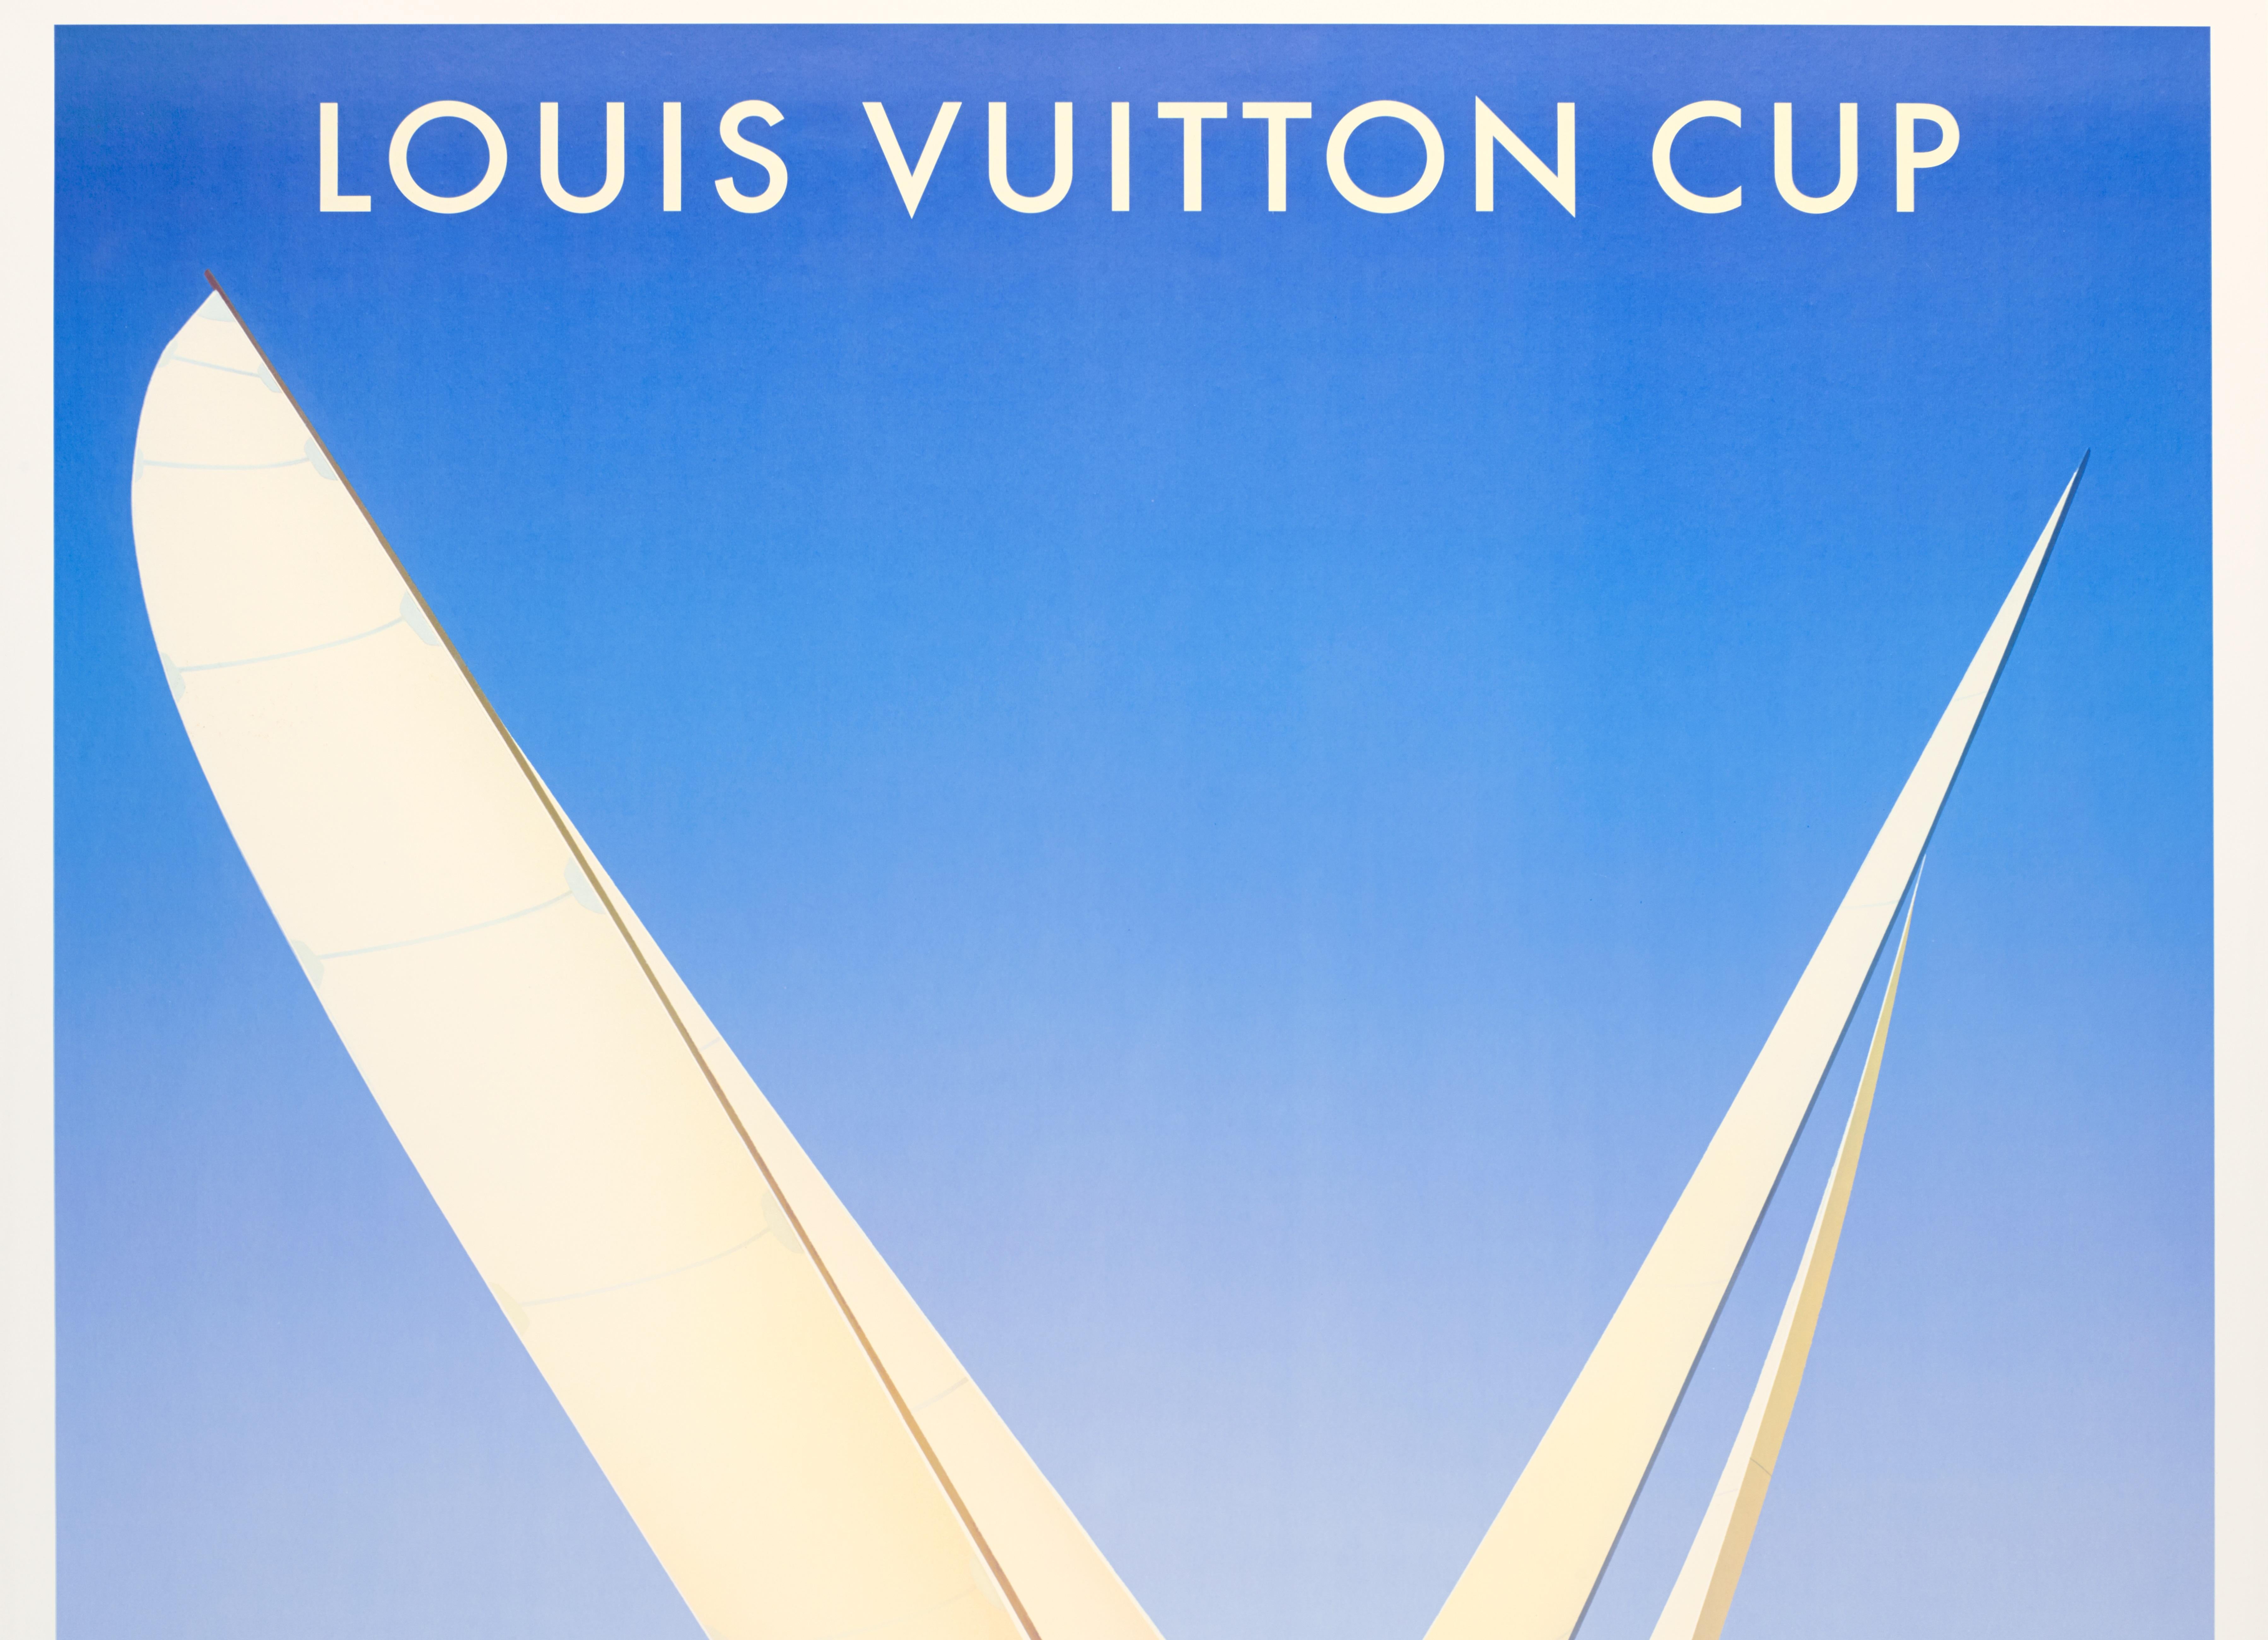 Razzia, Original Louis Vuitton Bootsposter, Auckland, Neuseeland, Segelschiff, 2002

Künstler: Razzia
Titel: Louis Vuitton Cup - Neuseeland - Oktober 2002 - Januar 2003
Datum: 2002
Größe (B x H): 48 x 60,2 in / 122 x 153 cm
MATERIALIEN und